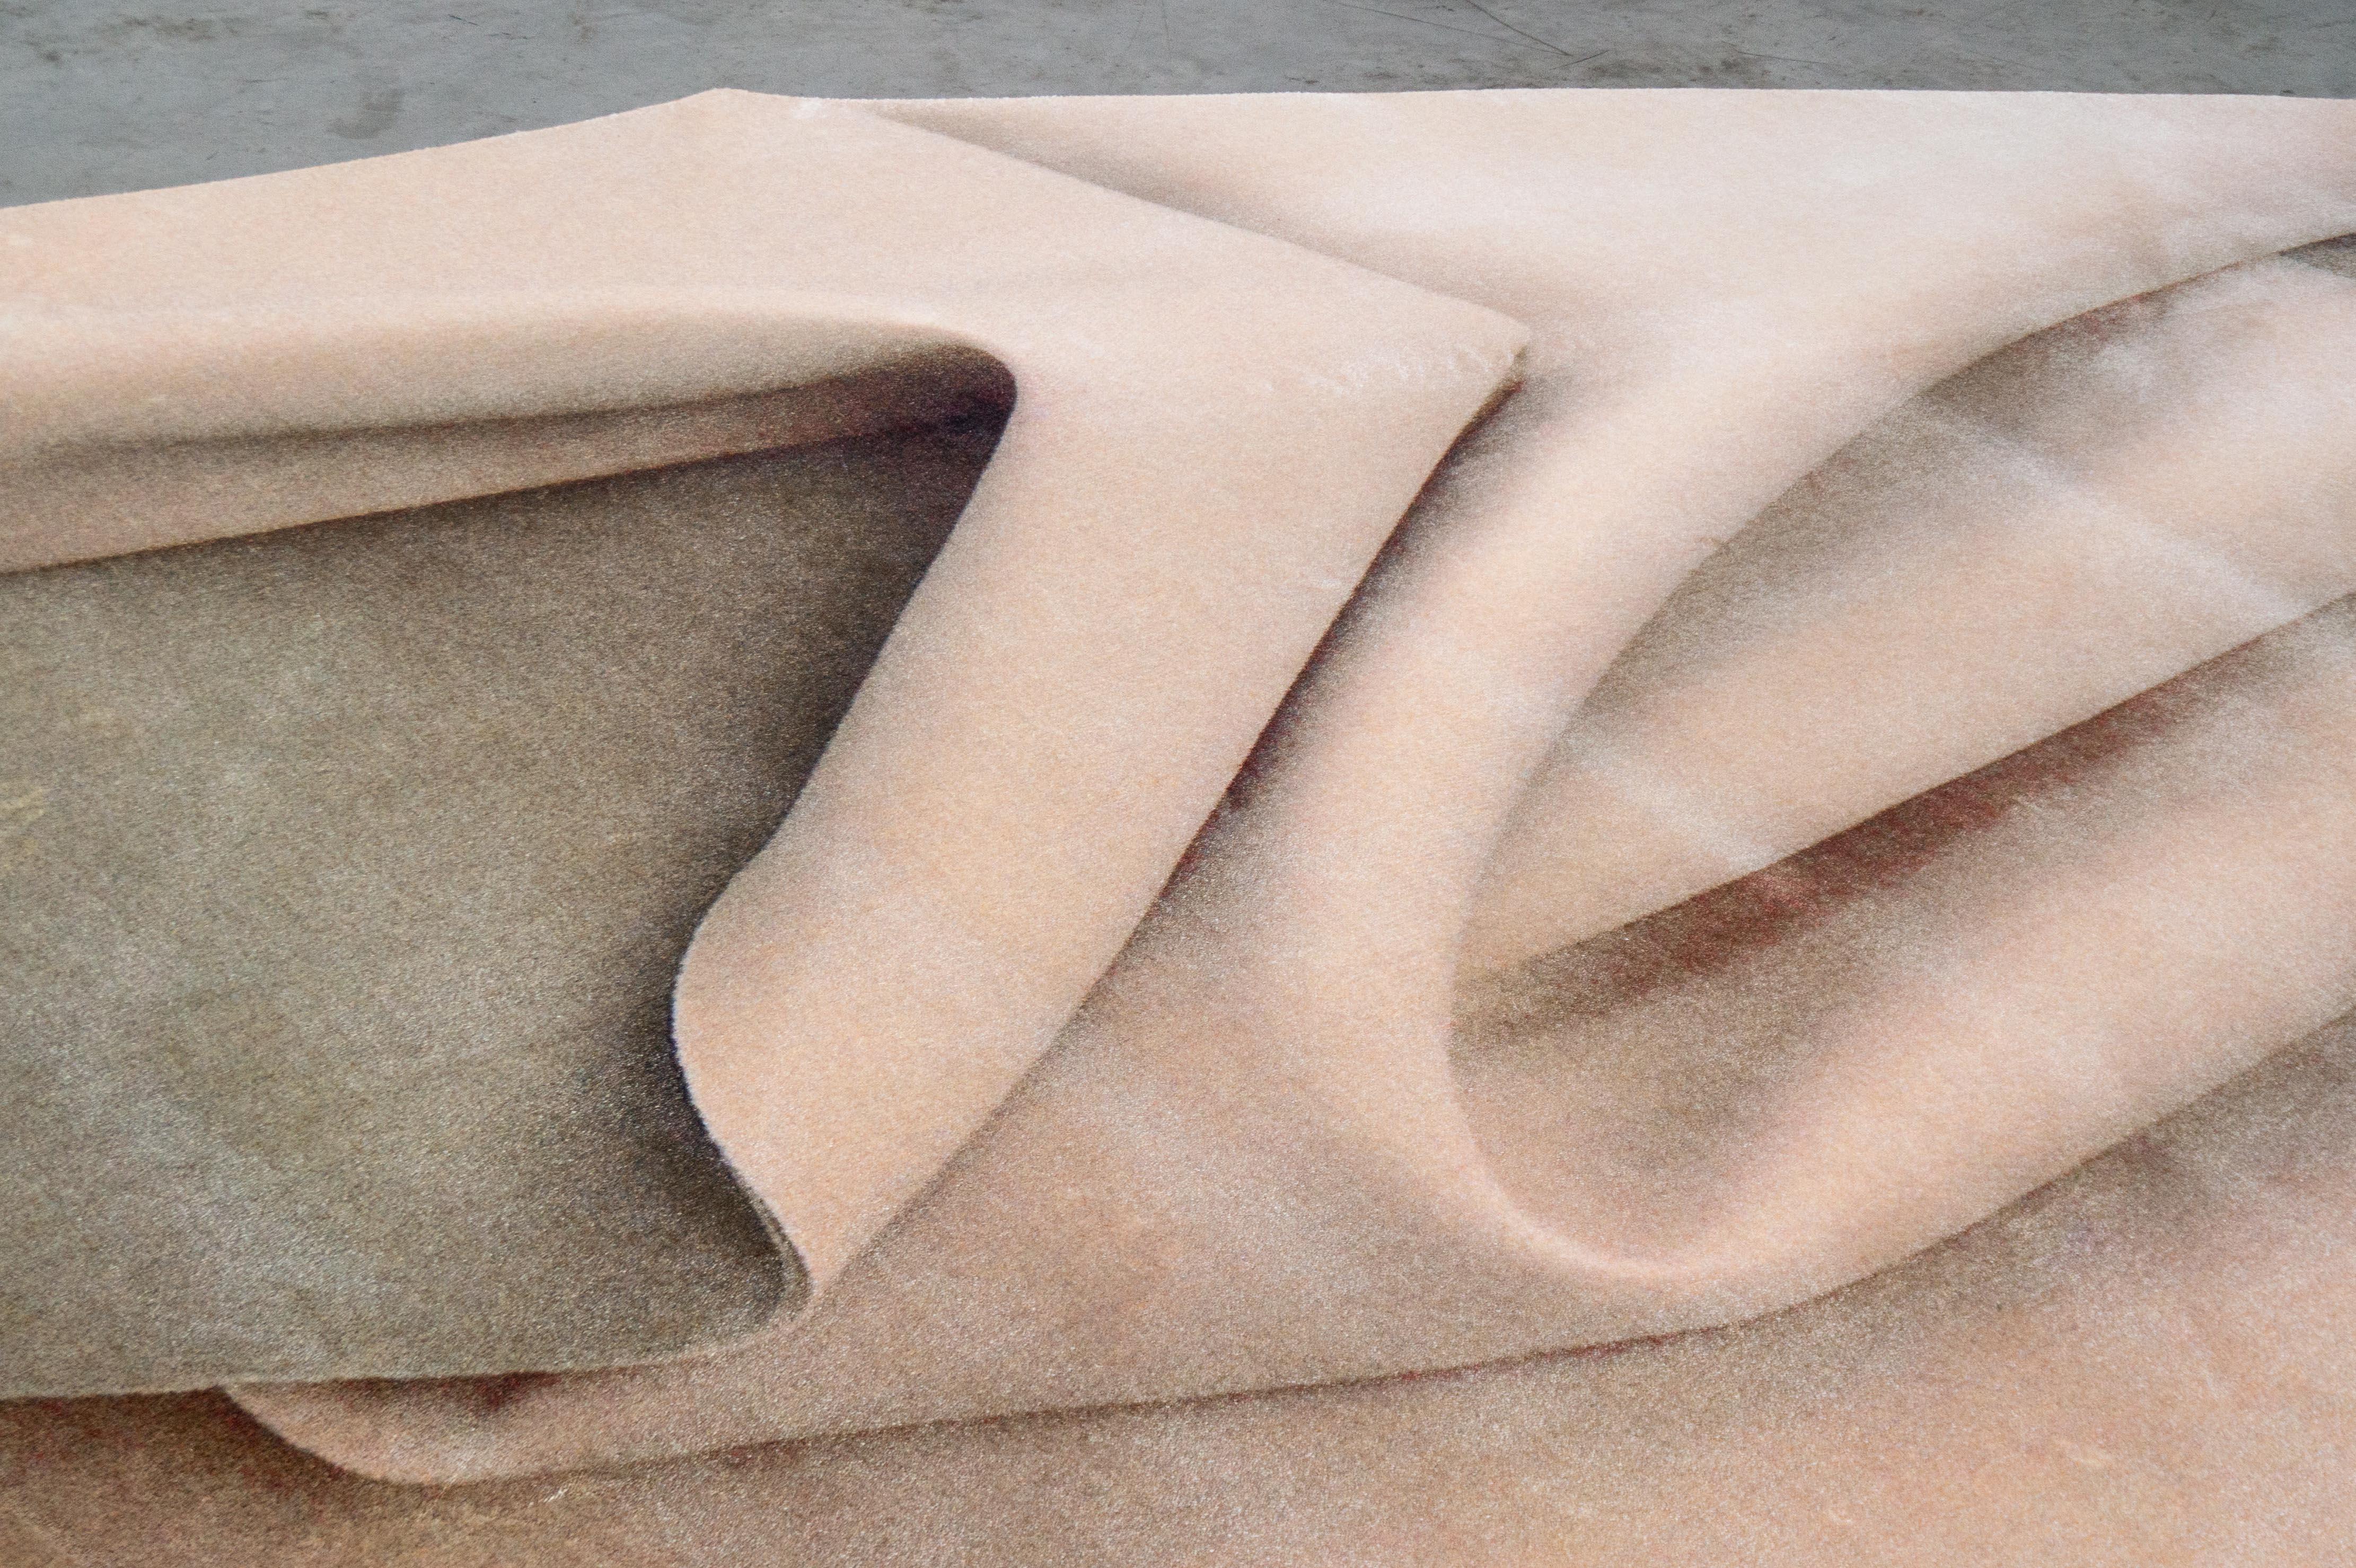 Moooi Large Nude Fold rug in Wool with Blind Hem Finish par Celia Hadeler

Celia Hadeler est une artiste contemporaine, basée aux Pays-Bas. Son travail est fait de contradictions et de contrastes. D'origine péruvienne et allemande, Celia est le